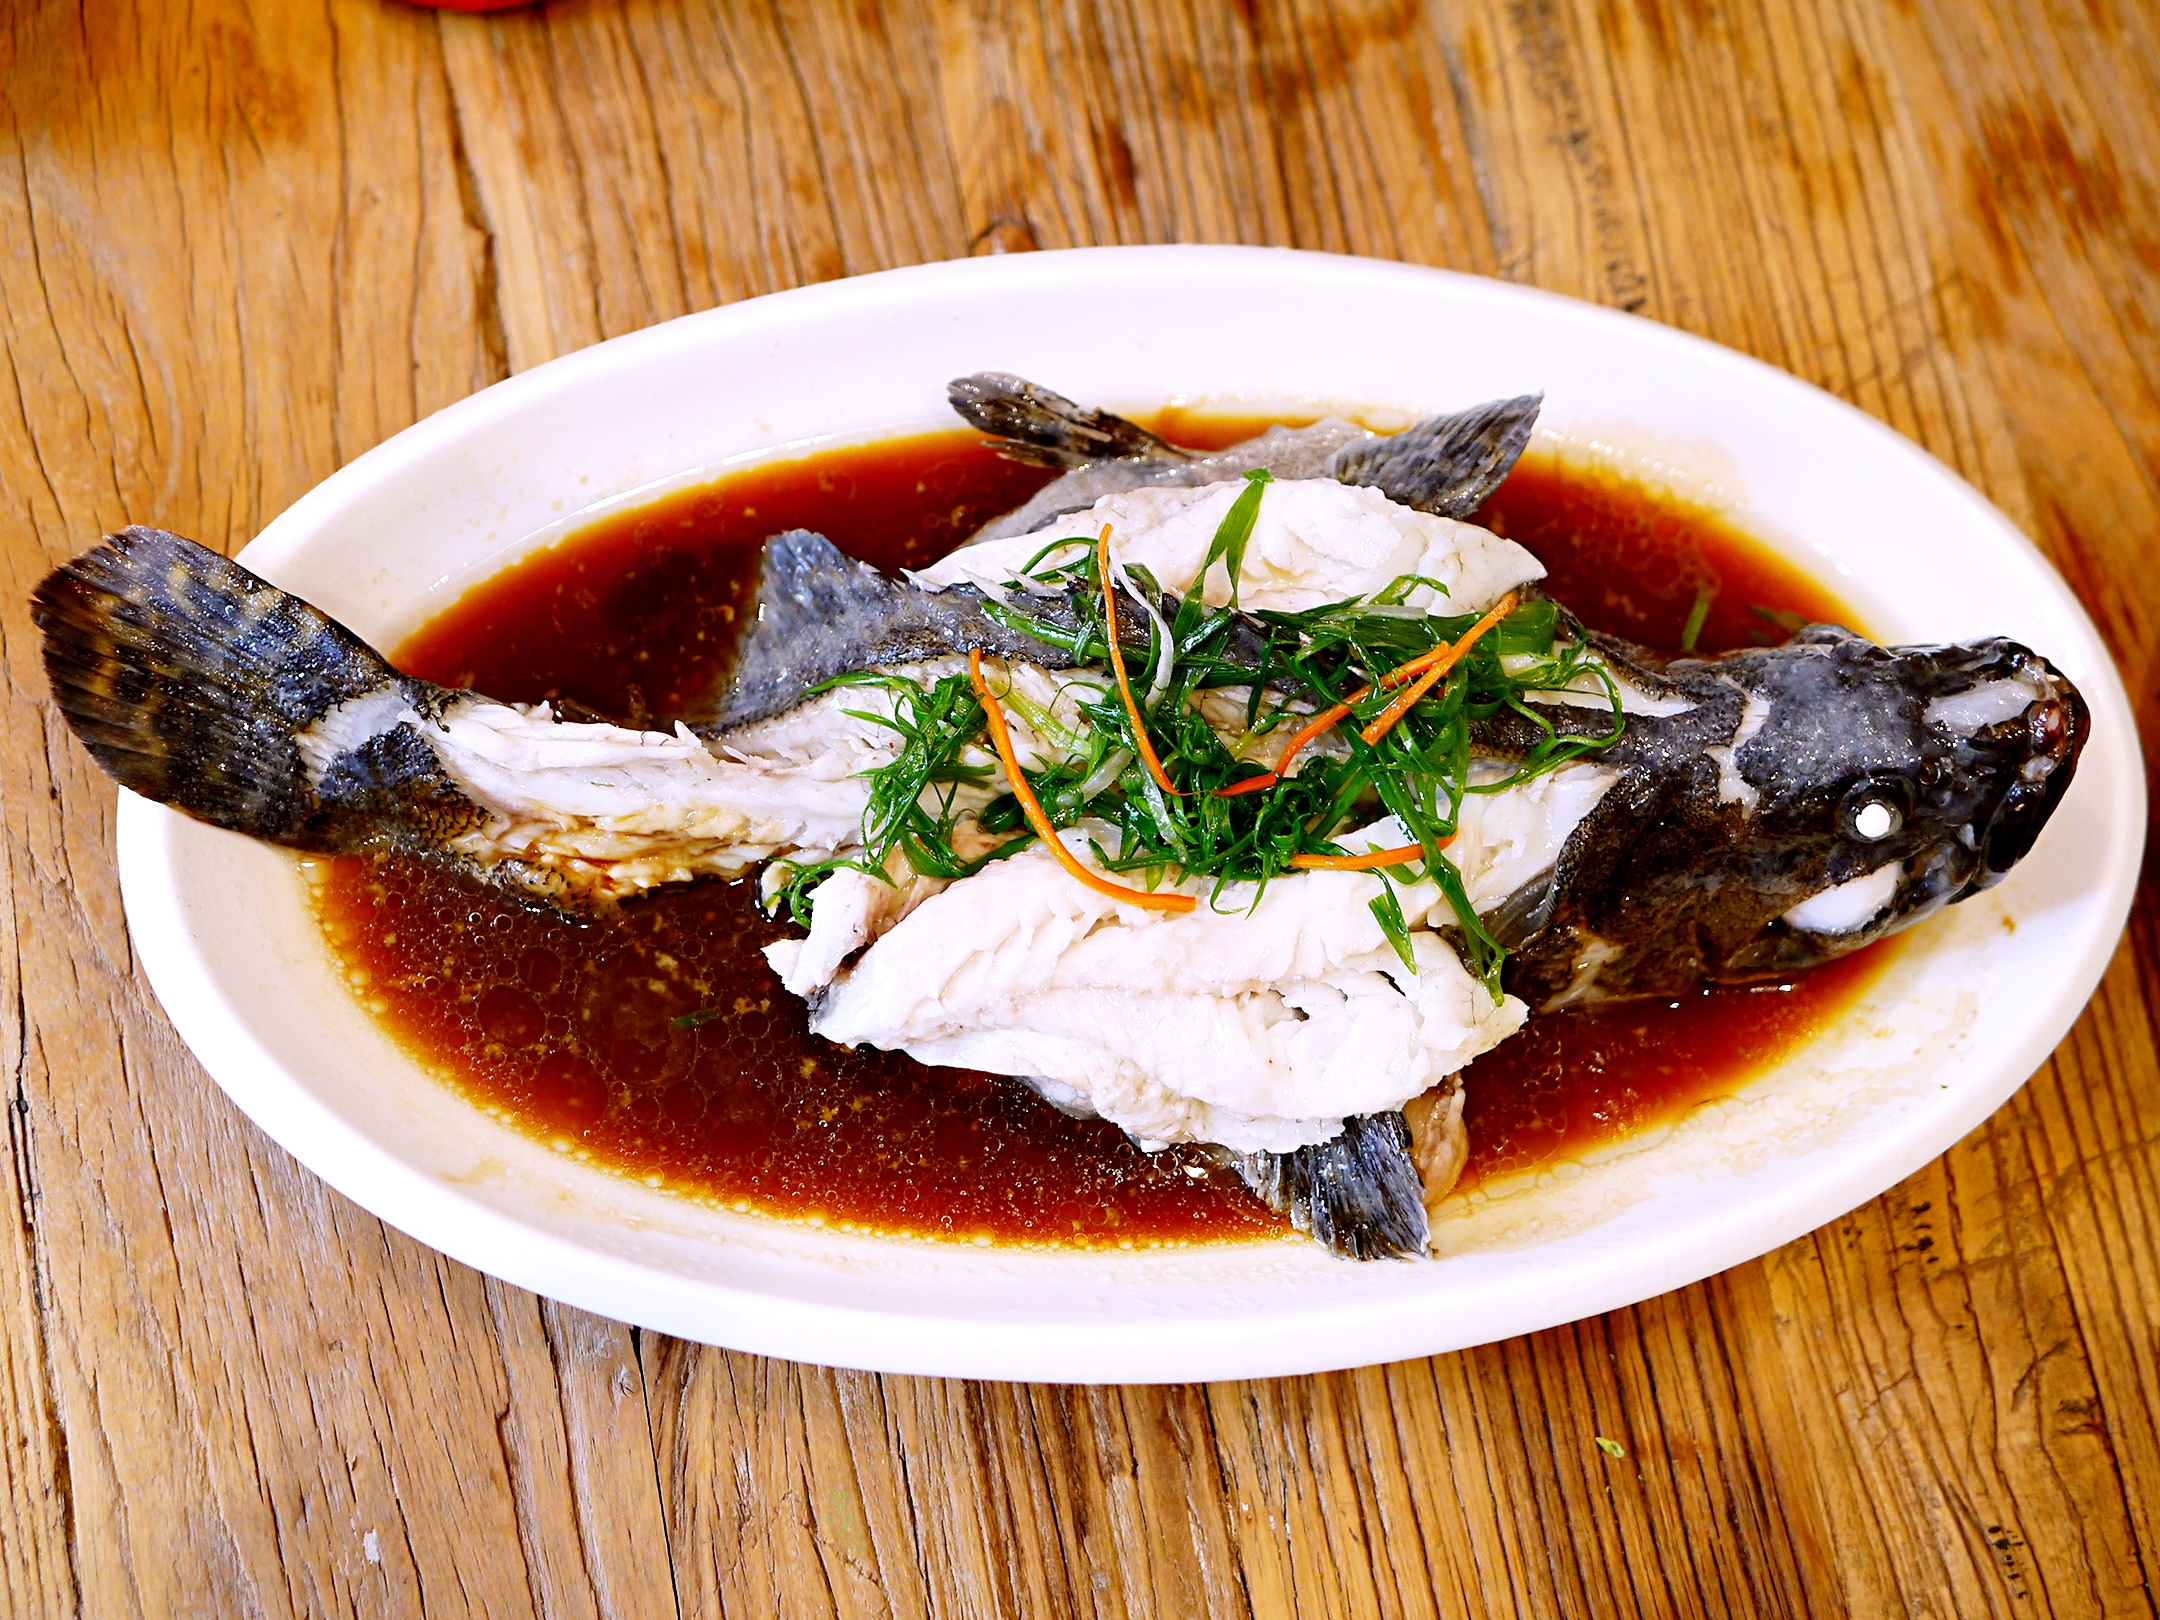 清蒸石斑鱼清蒸石斑鱼:和龙虾一样,这道菜也是采用清蒸的做法,感觉